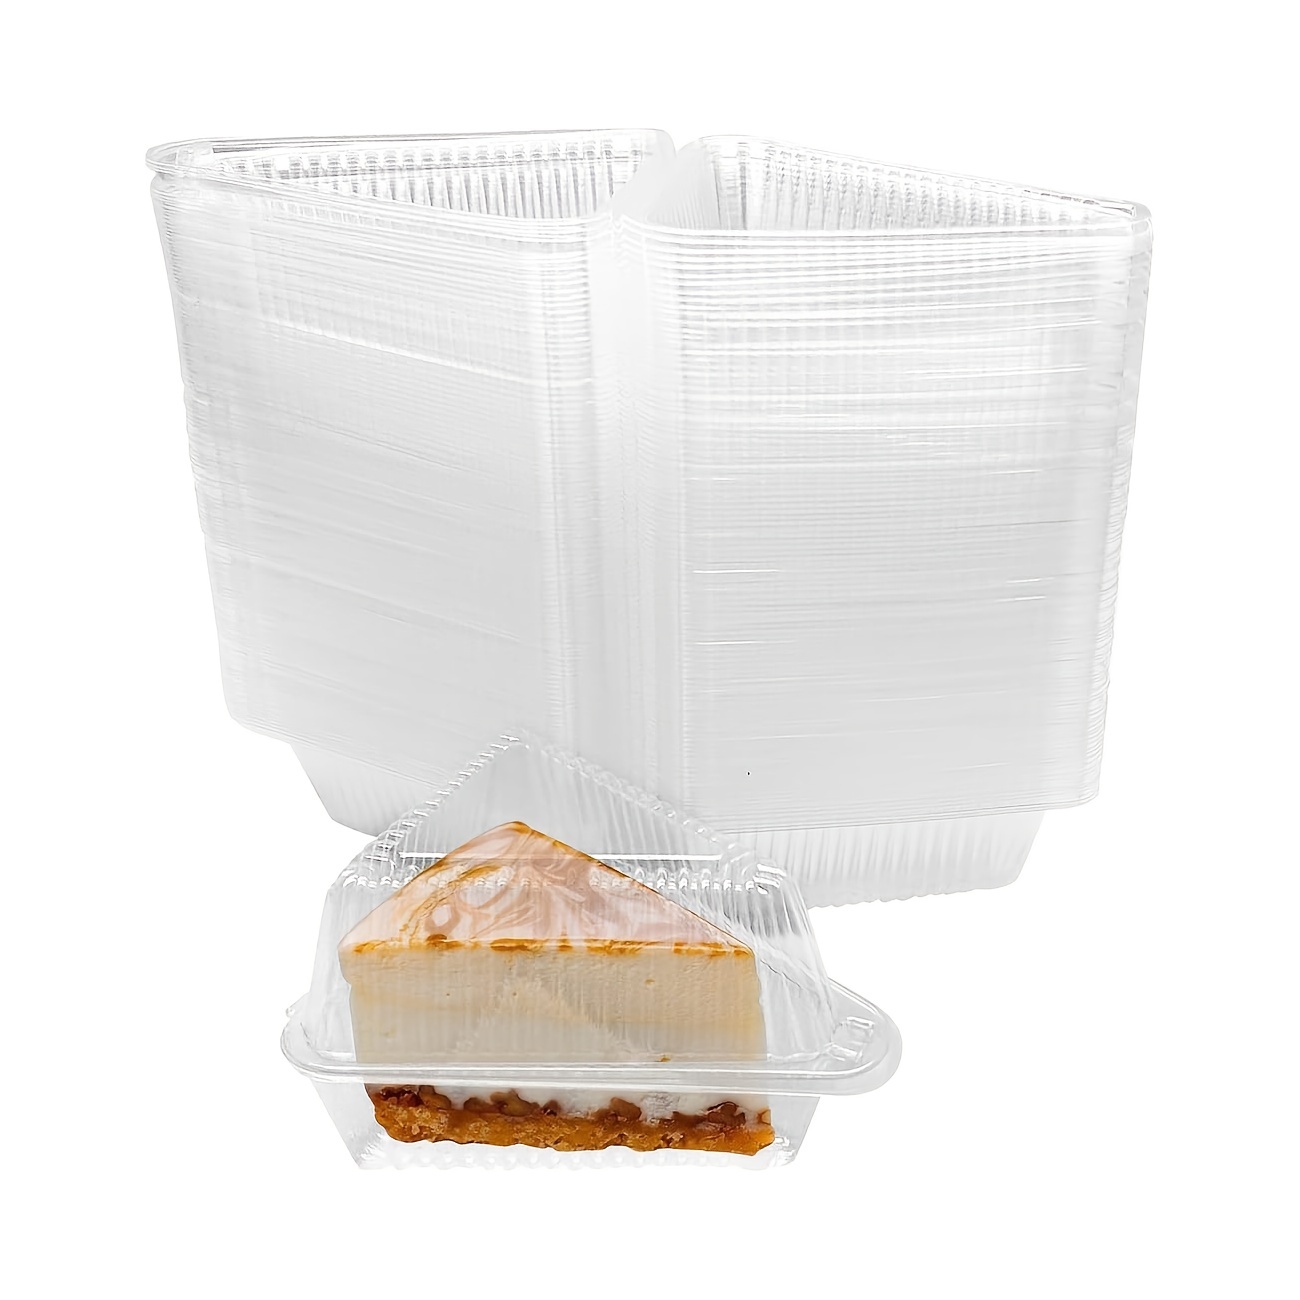 Contenitore da frigo vassoio porta pane formaggio dolci alimenti